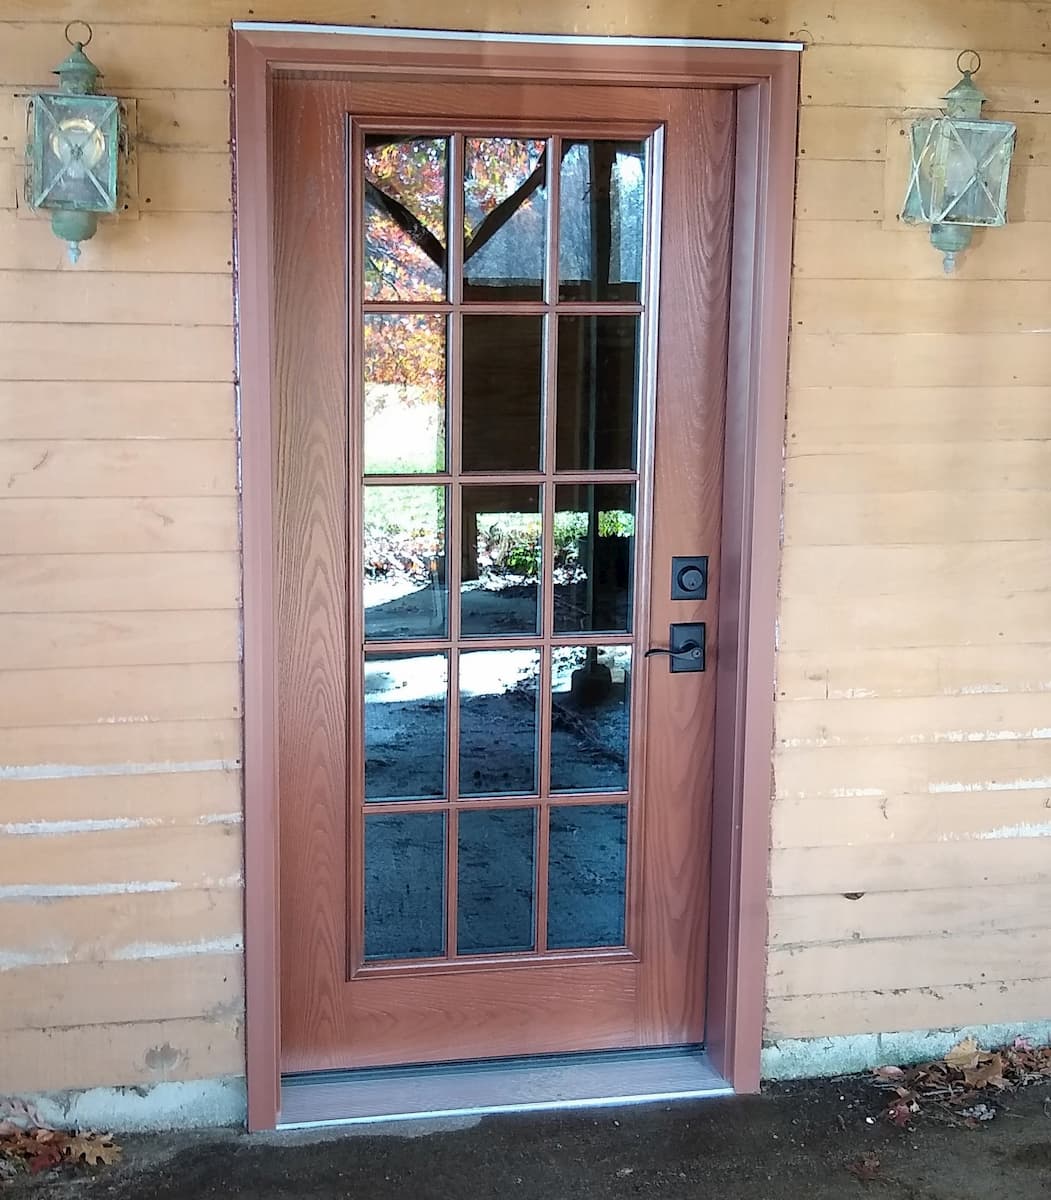 Exterior view of new fiberglass wood-look entry door.